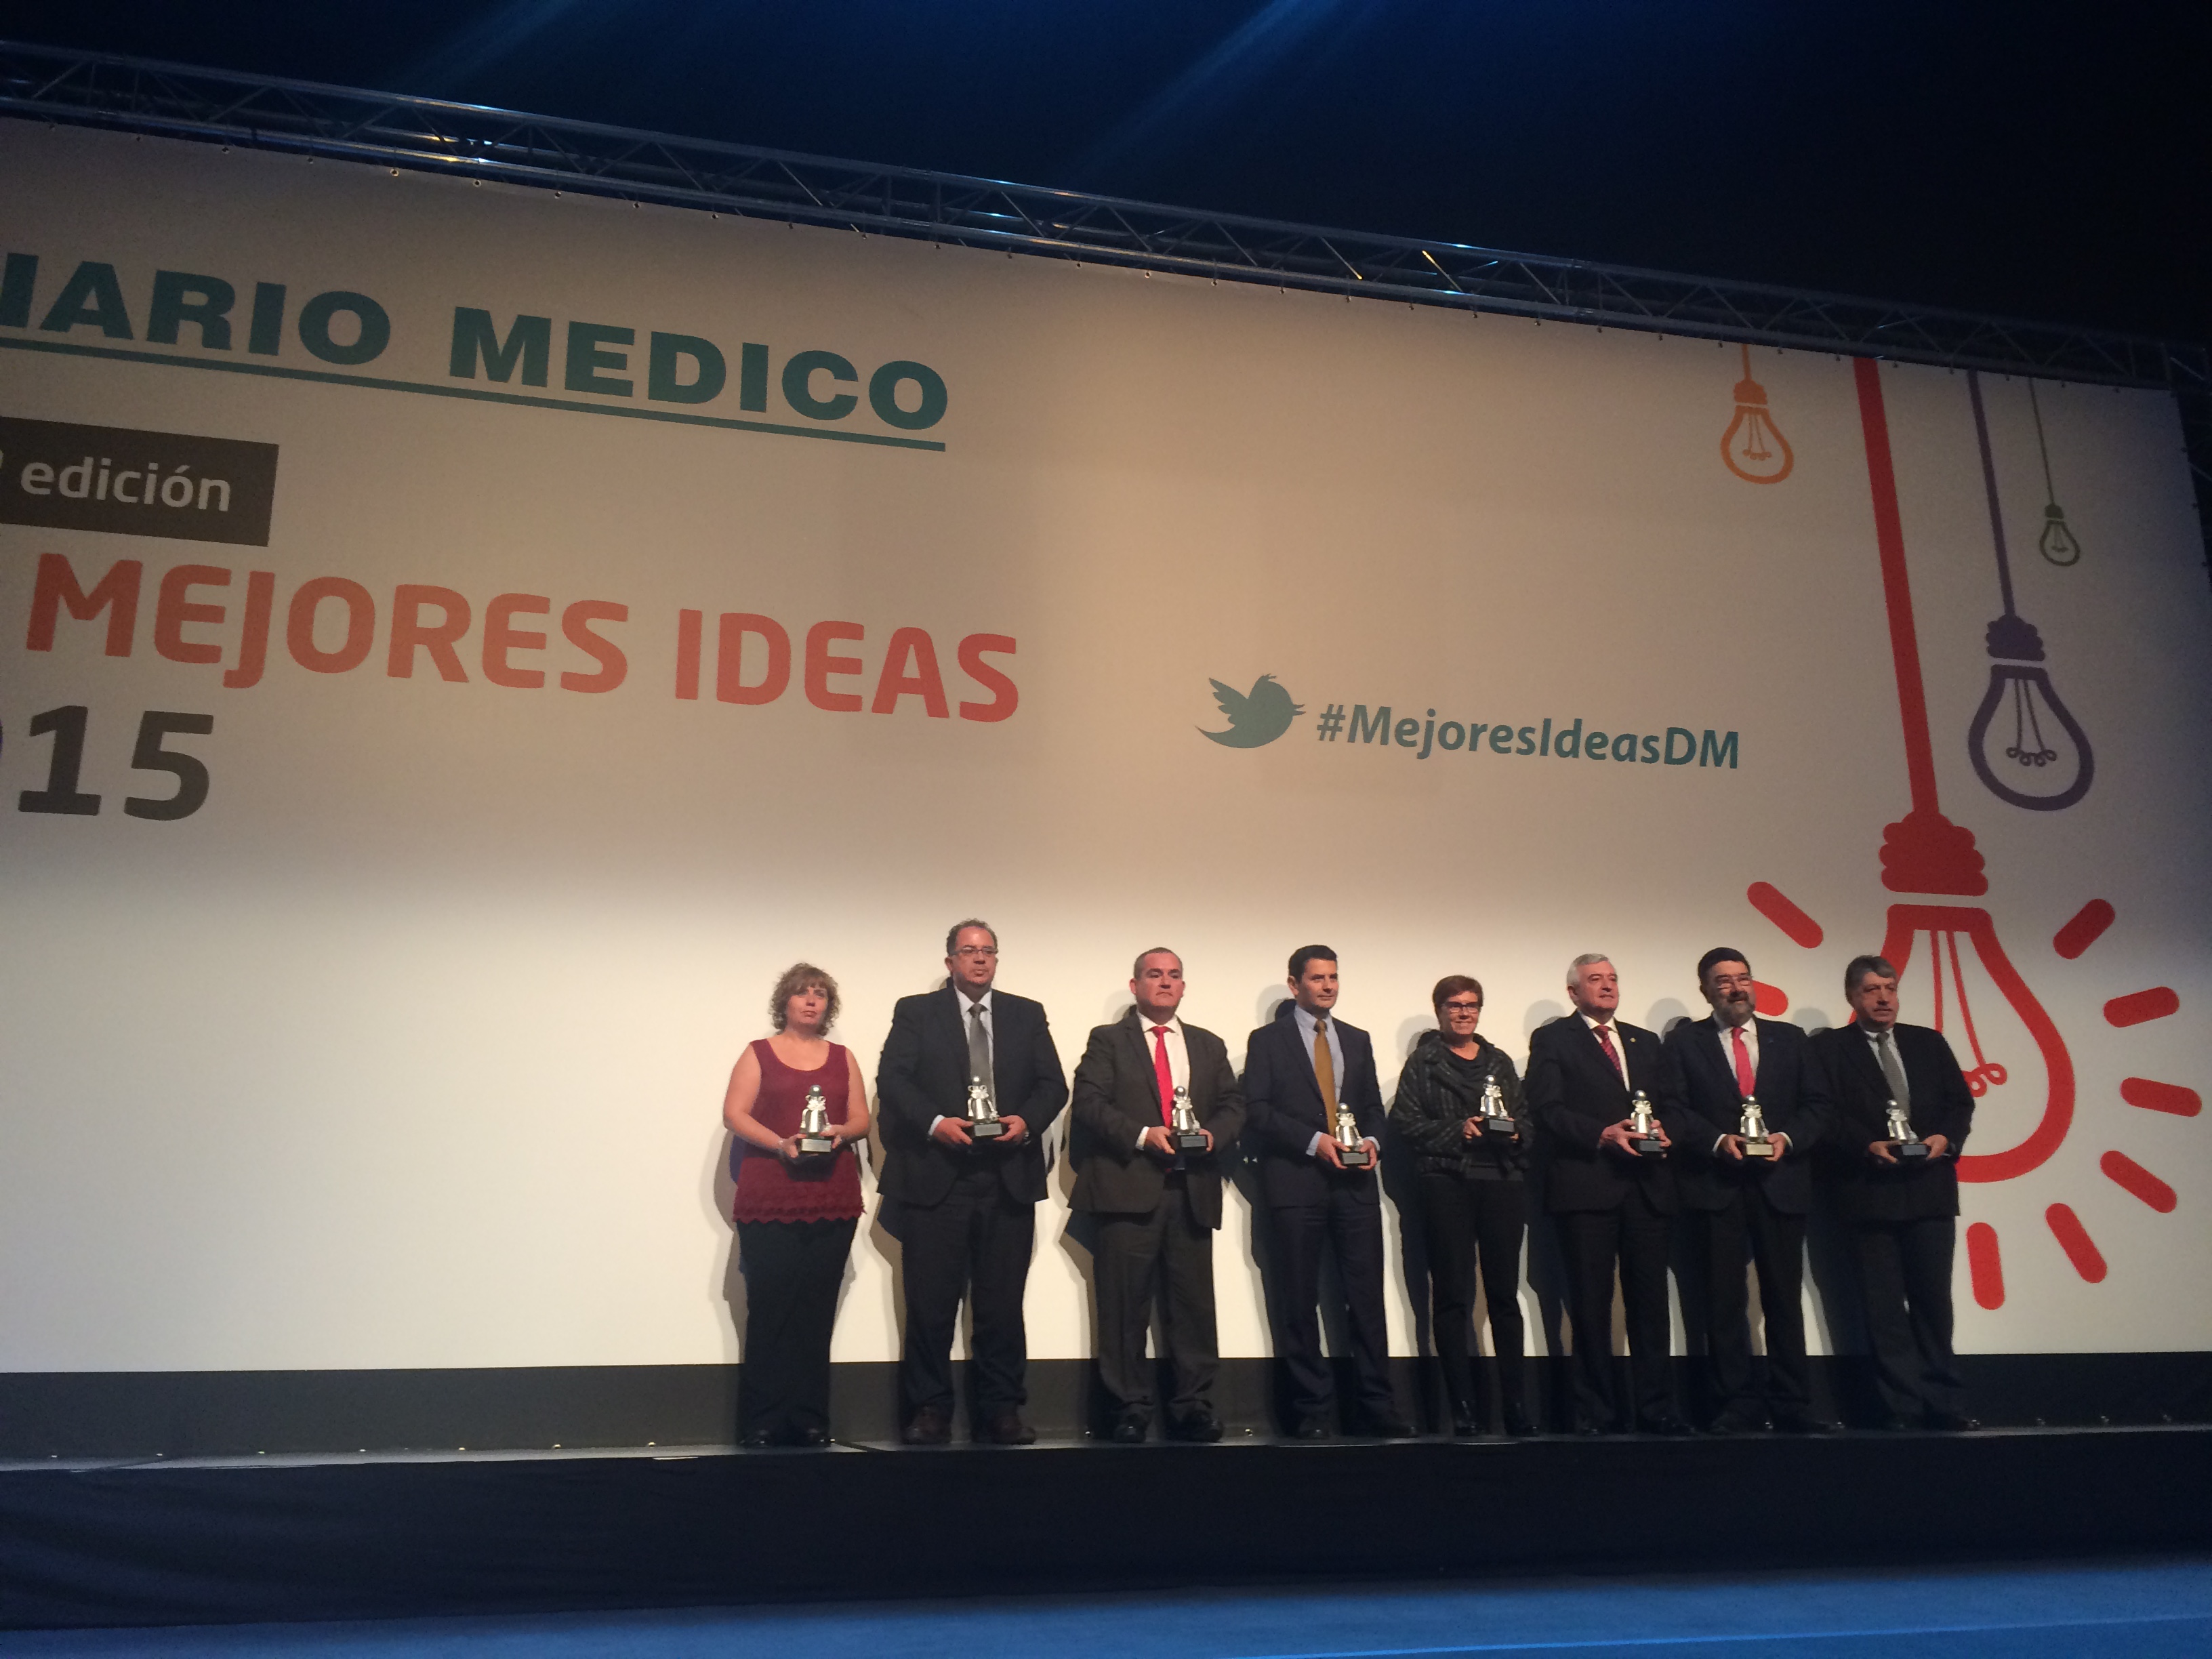 Diario Médico reconoce el proceso colaborativo del Congreso de semFYC como una de las mejores ideas de 2015